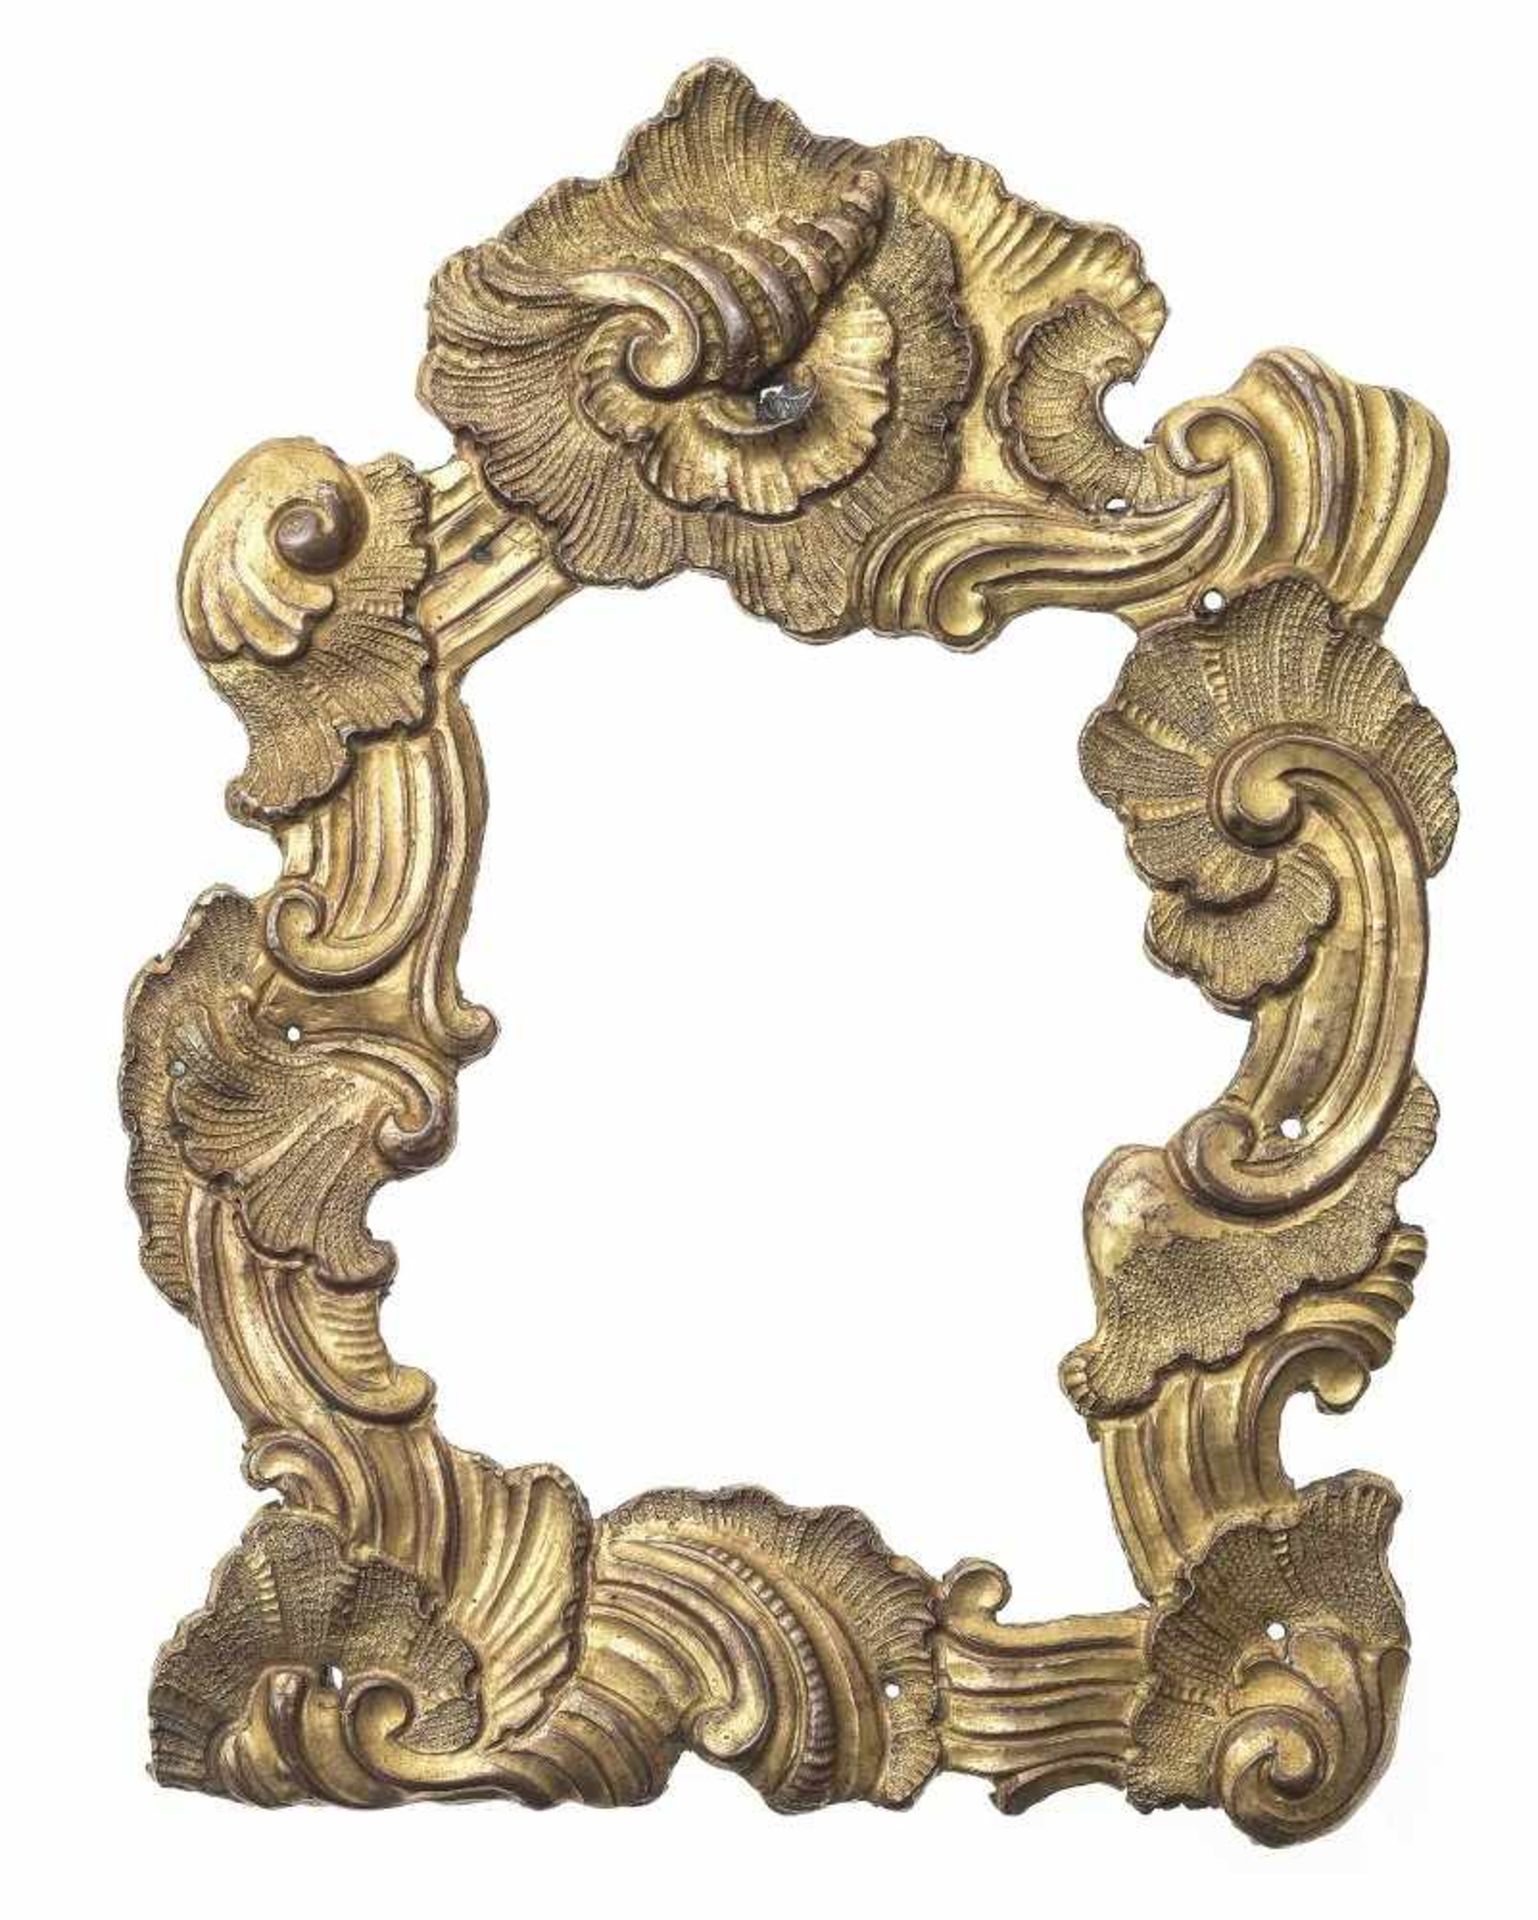 RähmchenSüddeutsch, um 1750. Kupfer, getrieben, vergoldet. Muscheldekor. Außenmaß 16 x 12 cm.